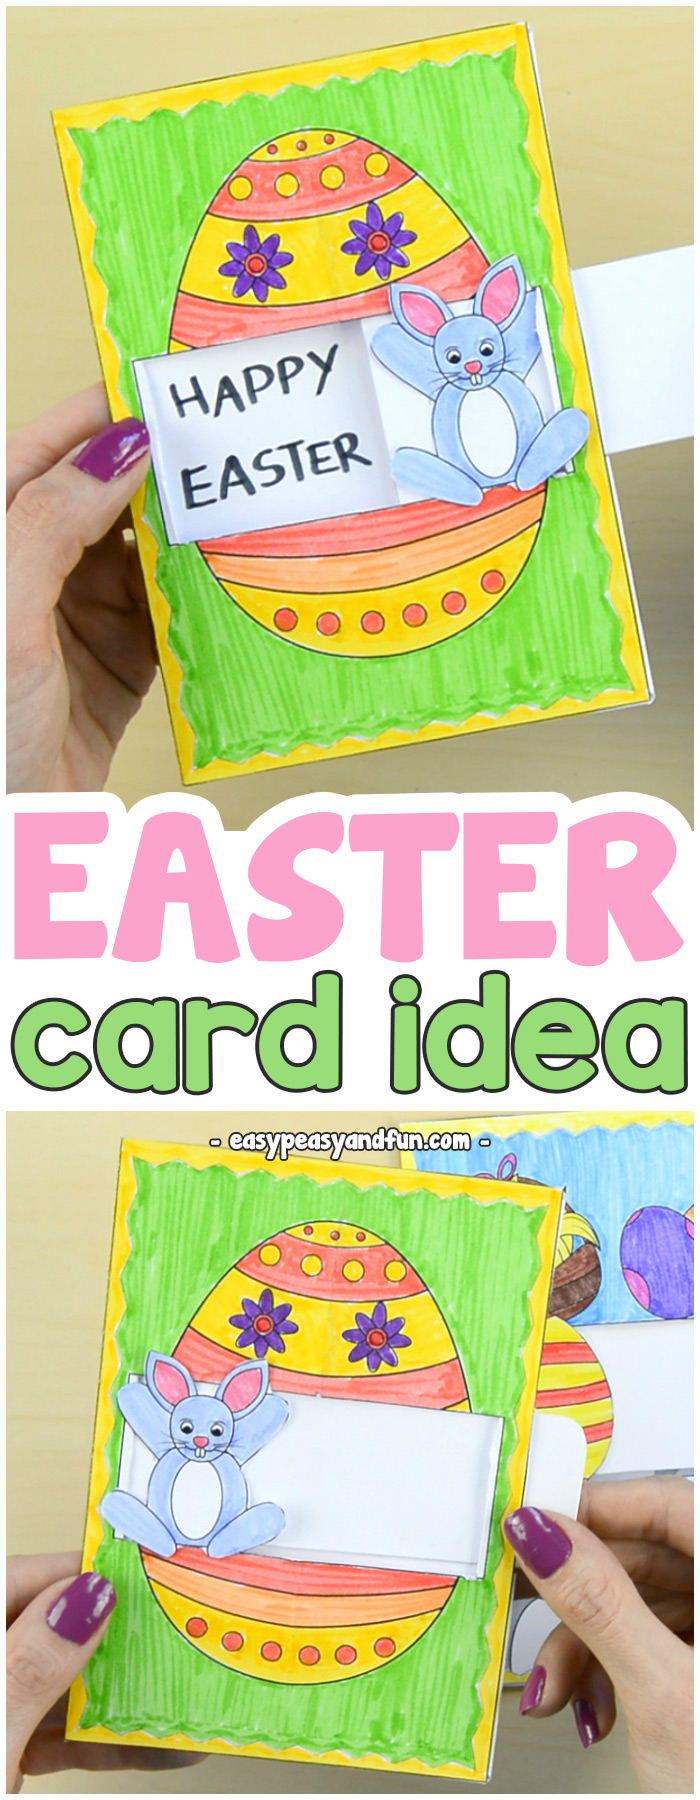 Hidden message Easter card ideas made by kids #Eastercraftsforkids #papercraftsforkids #DIYcardideas